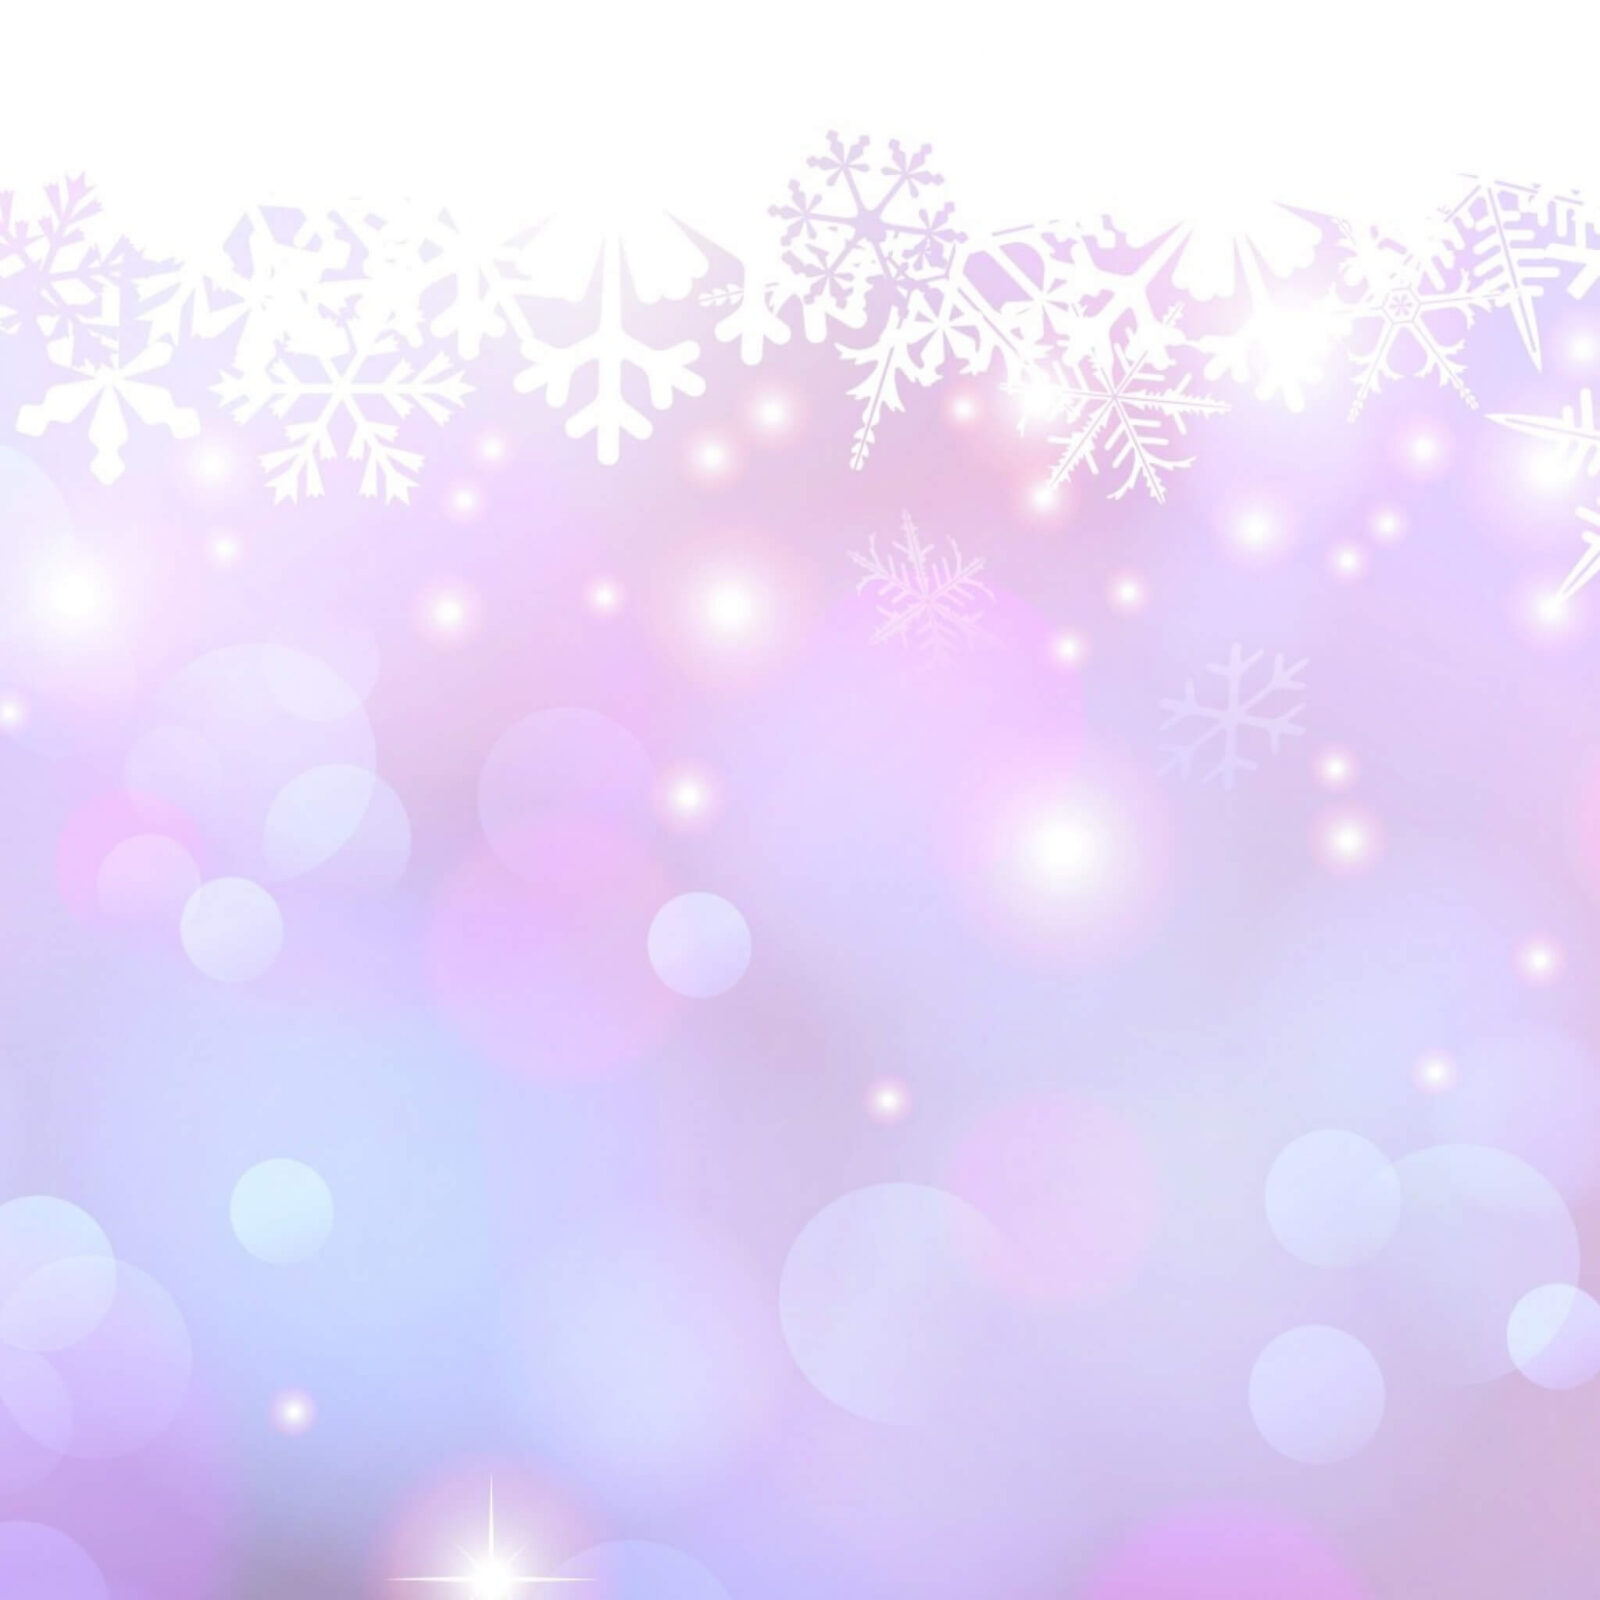 snowflakes_spots_dots_glow_76072_2048x2048